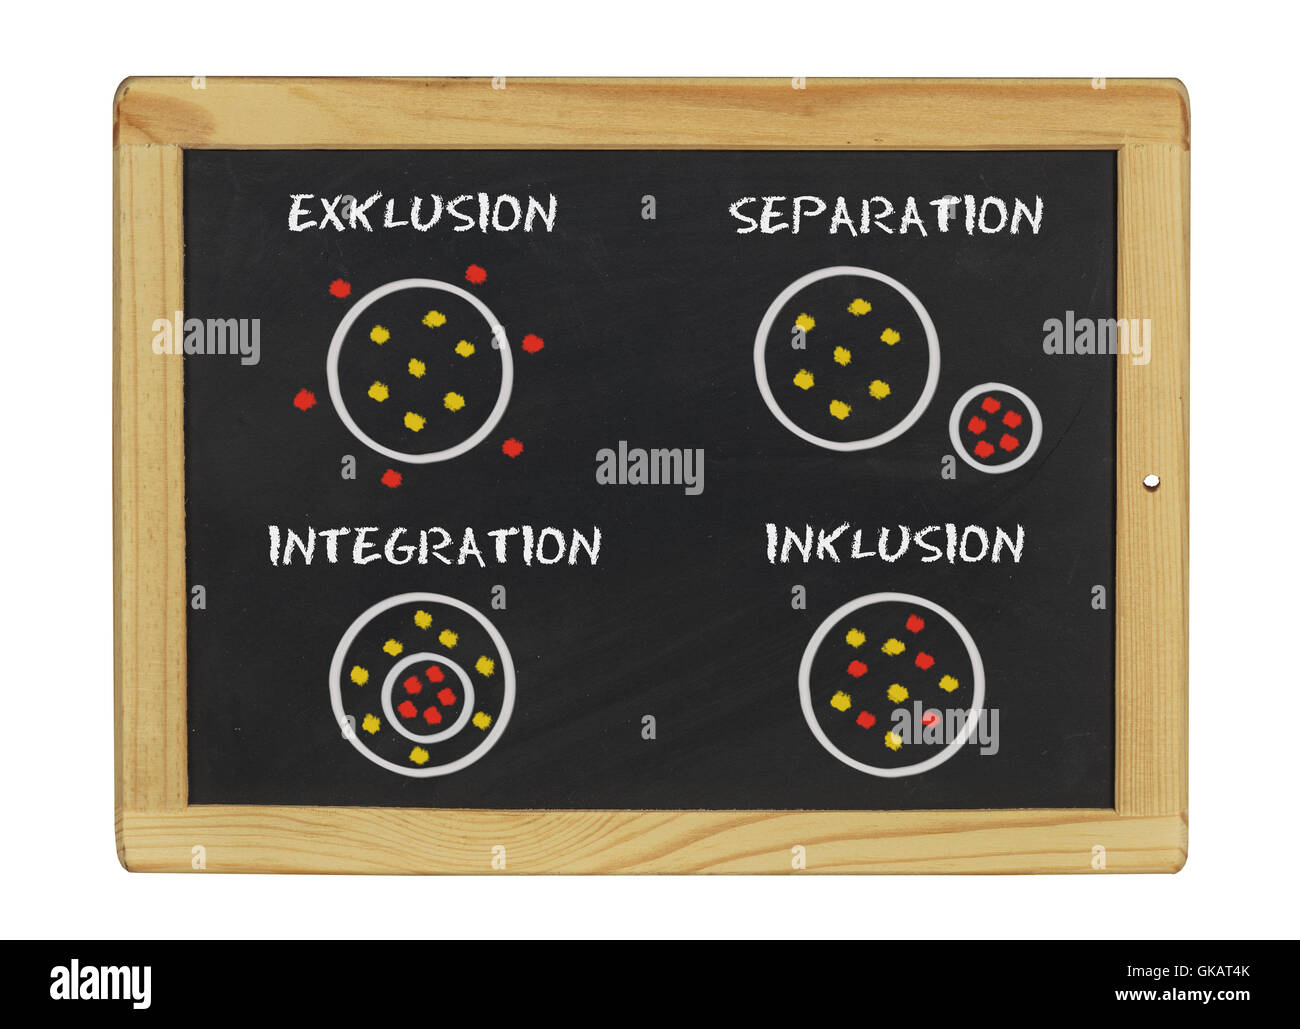 Inclusión - integración - Exclusión - separación Foto de stock